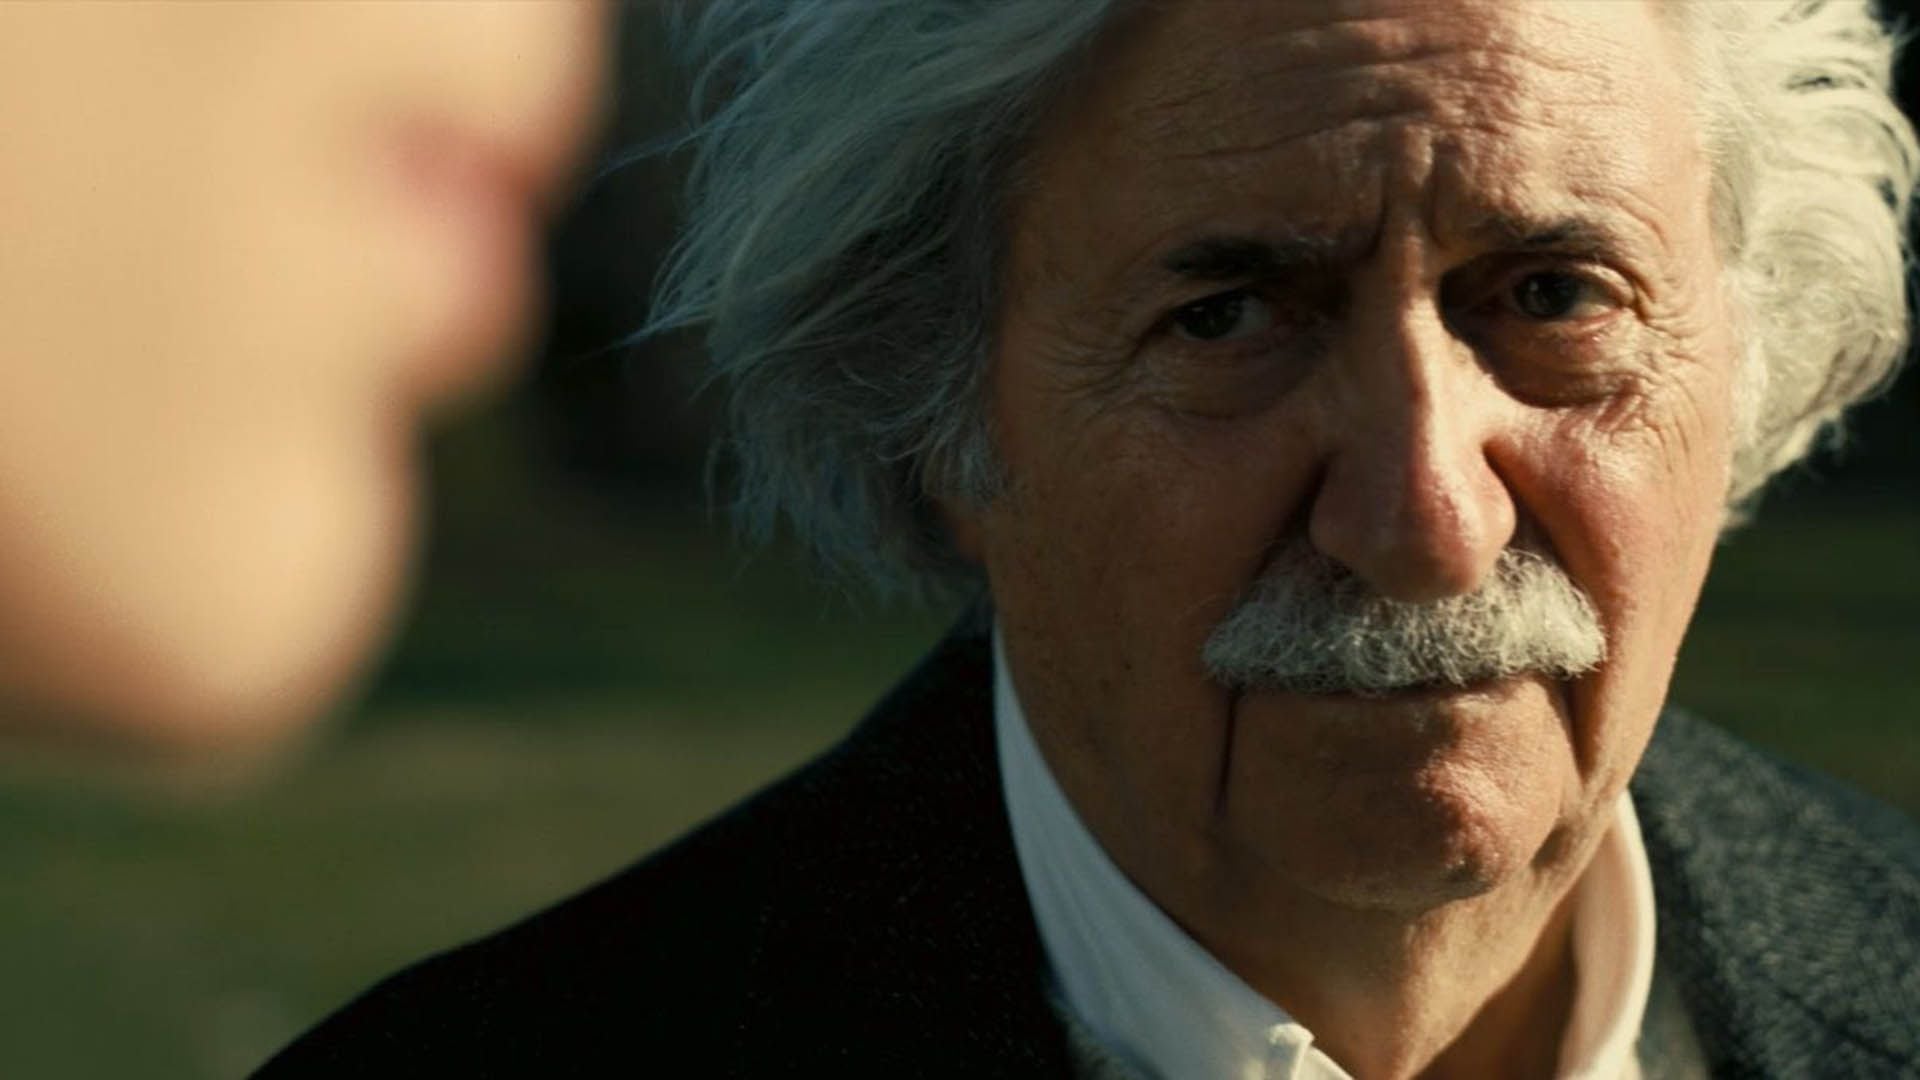 "Oppenhemier", dirigida por Christopher Nolan, sitúa a Einstein en un lugar simbólico central en la trama